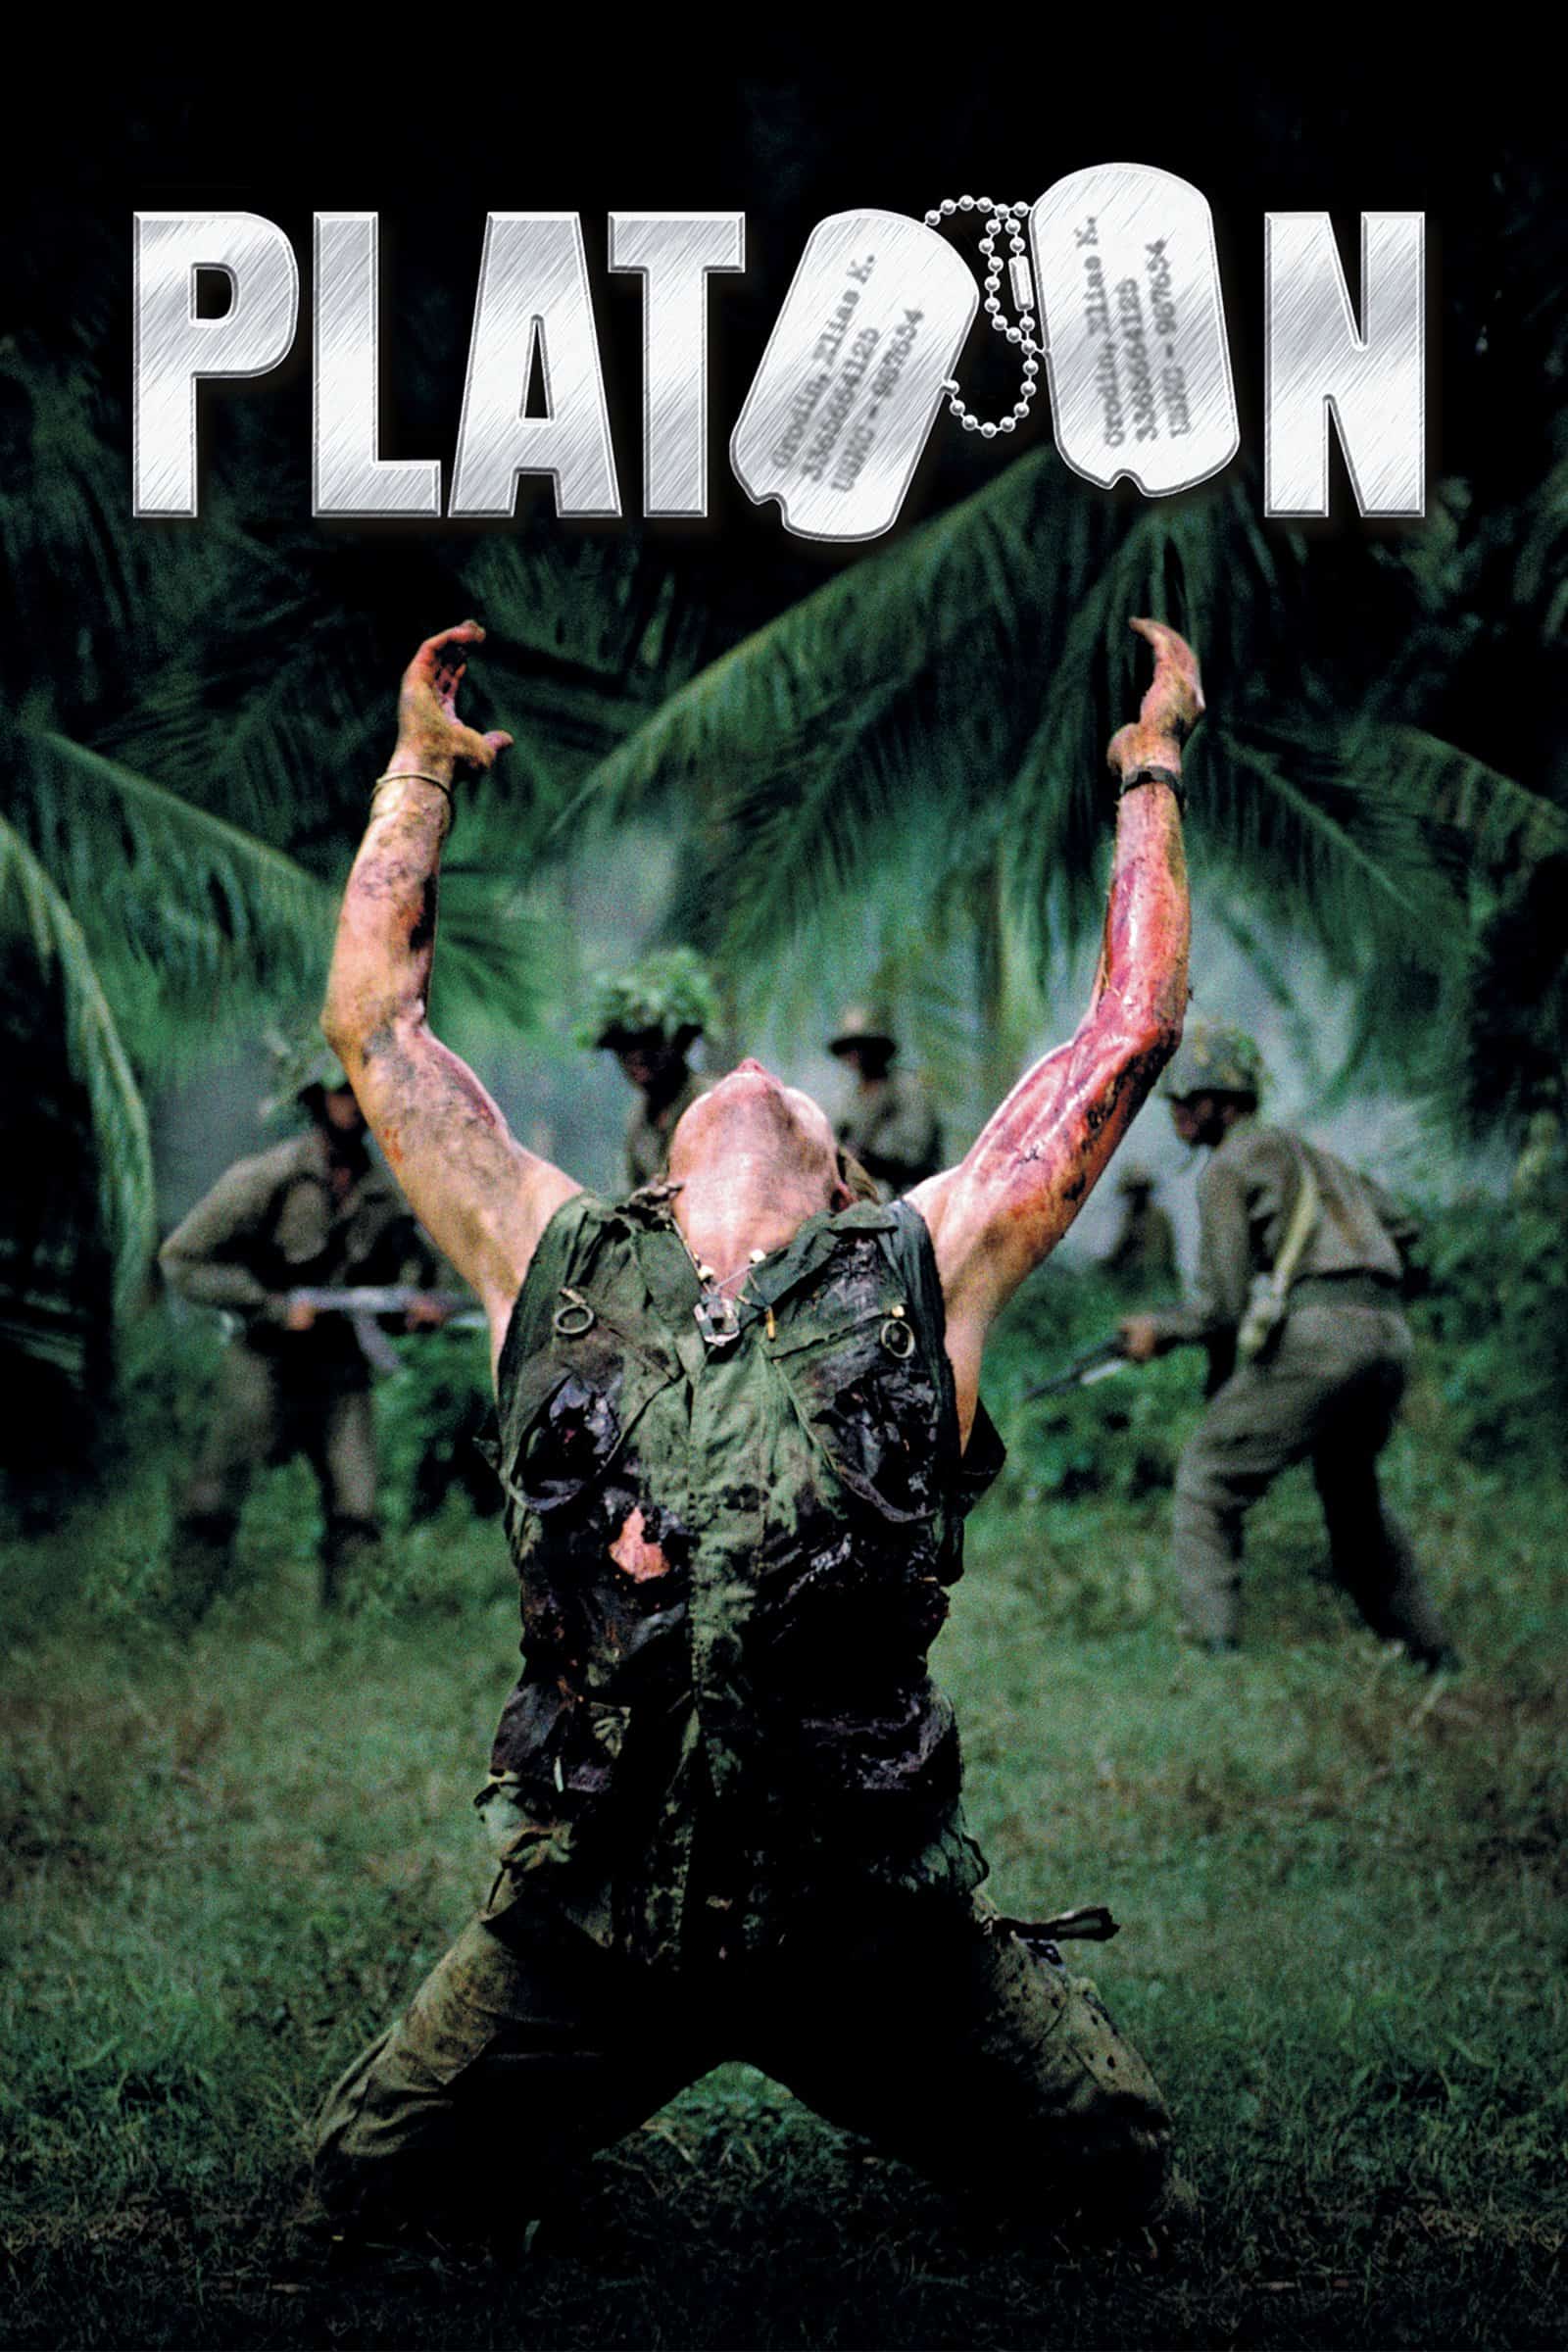 Platoon, 1986 